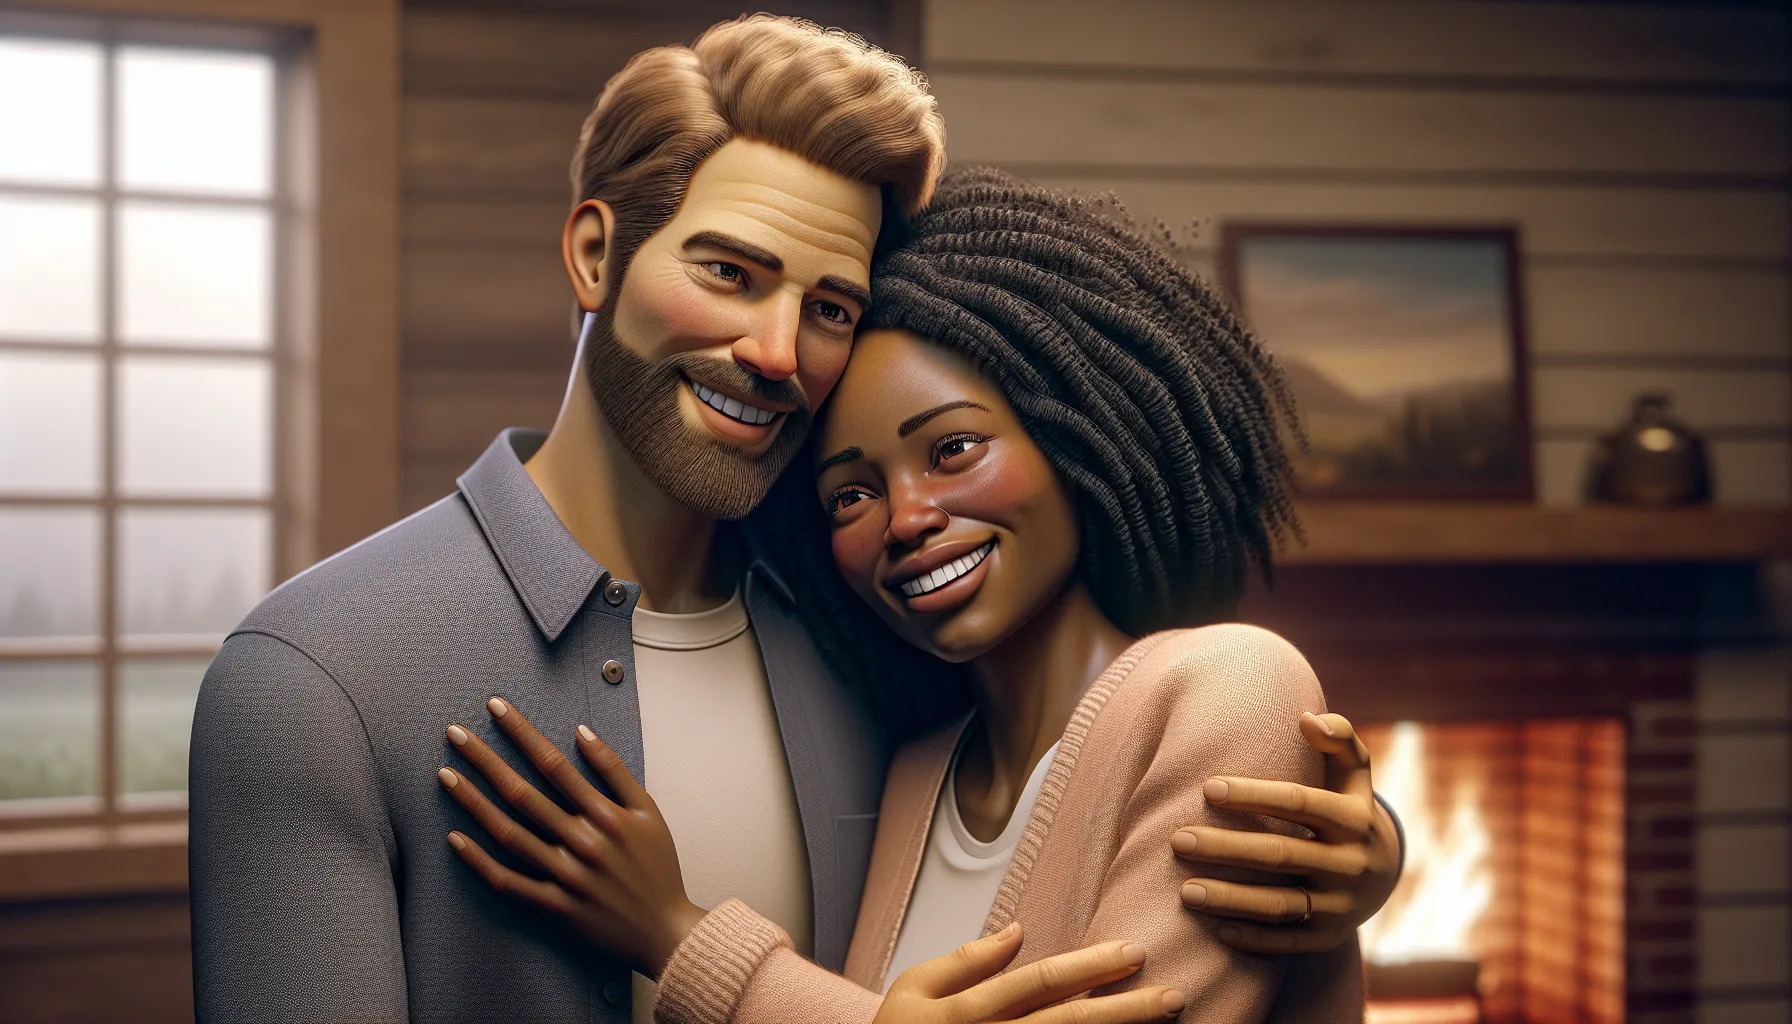 Imagen de una pareja casada abrazándose y sonriendo